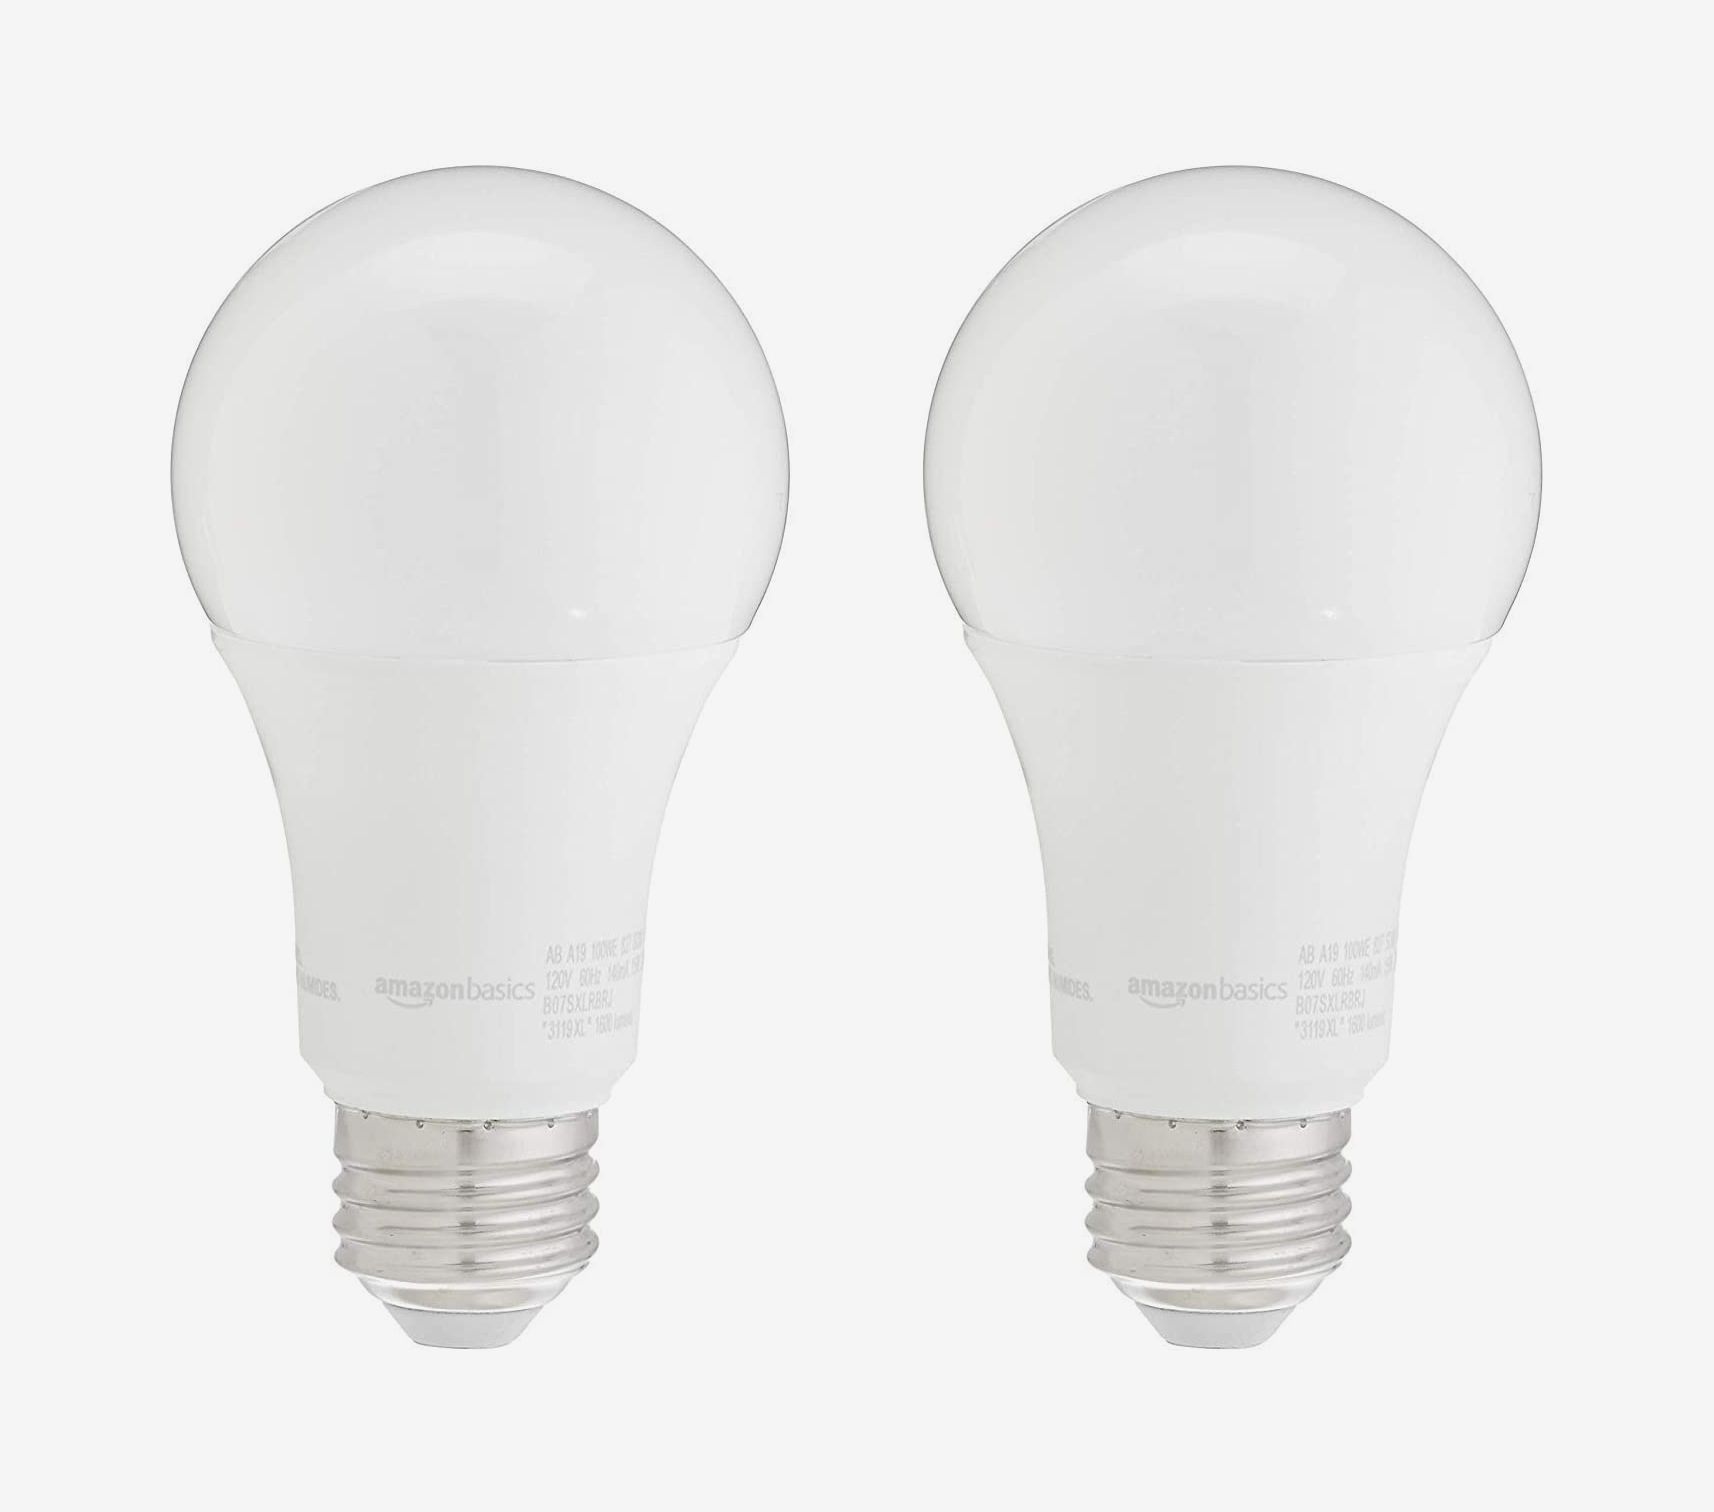 Daylight Basics 90 Watt Equivalent Dimmable PAR38 LED Light Bulb 2-Pack